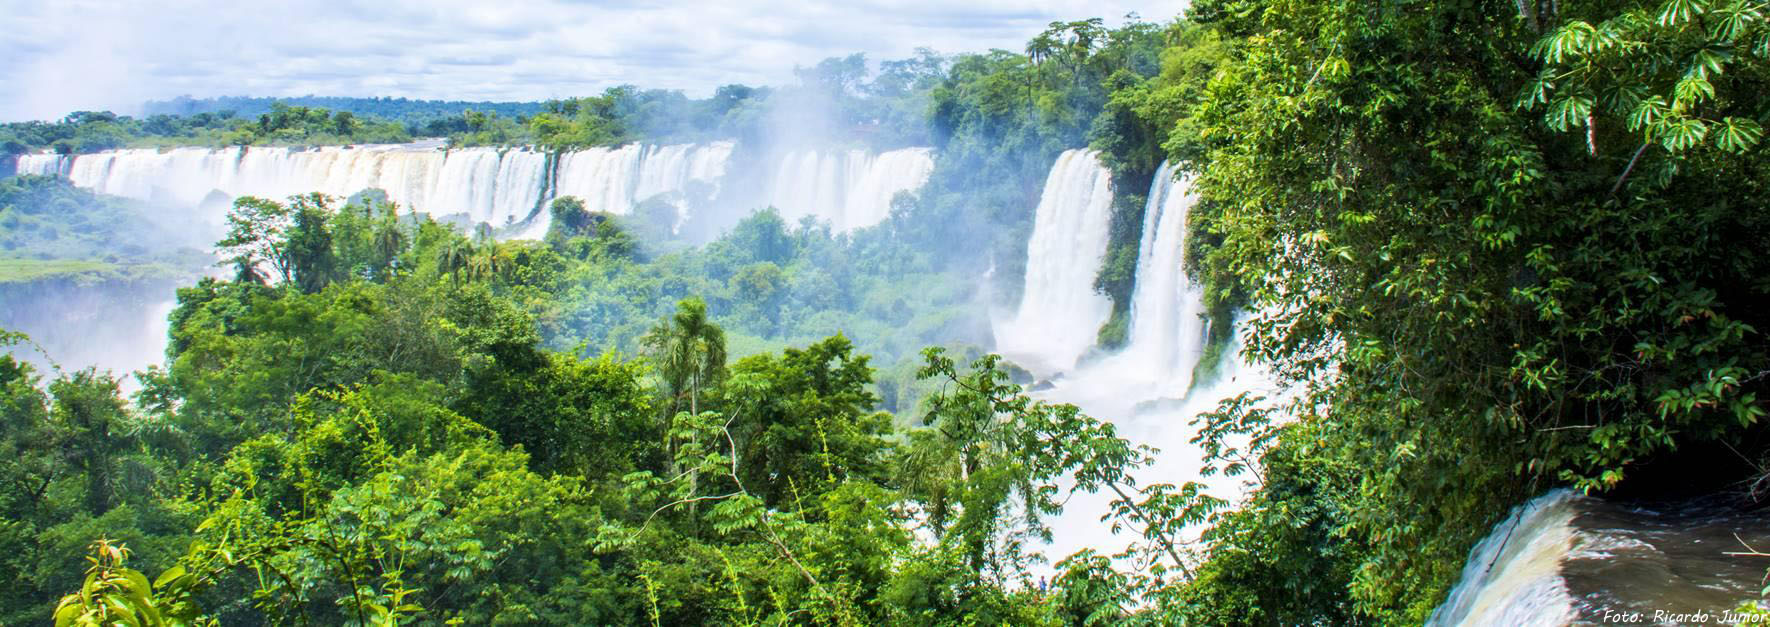 Foz do Iguaçu cidade de belezas, com certeza é o destino certo para você visitar